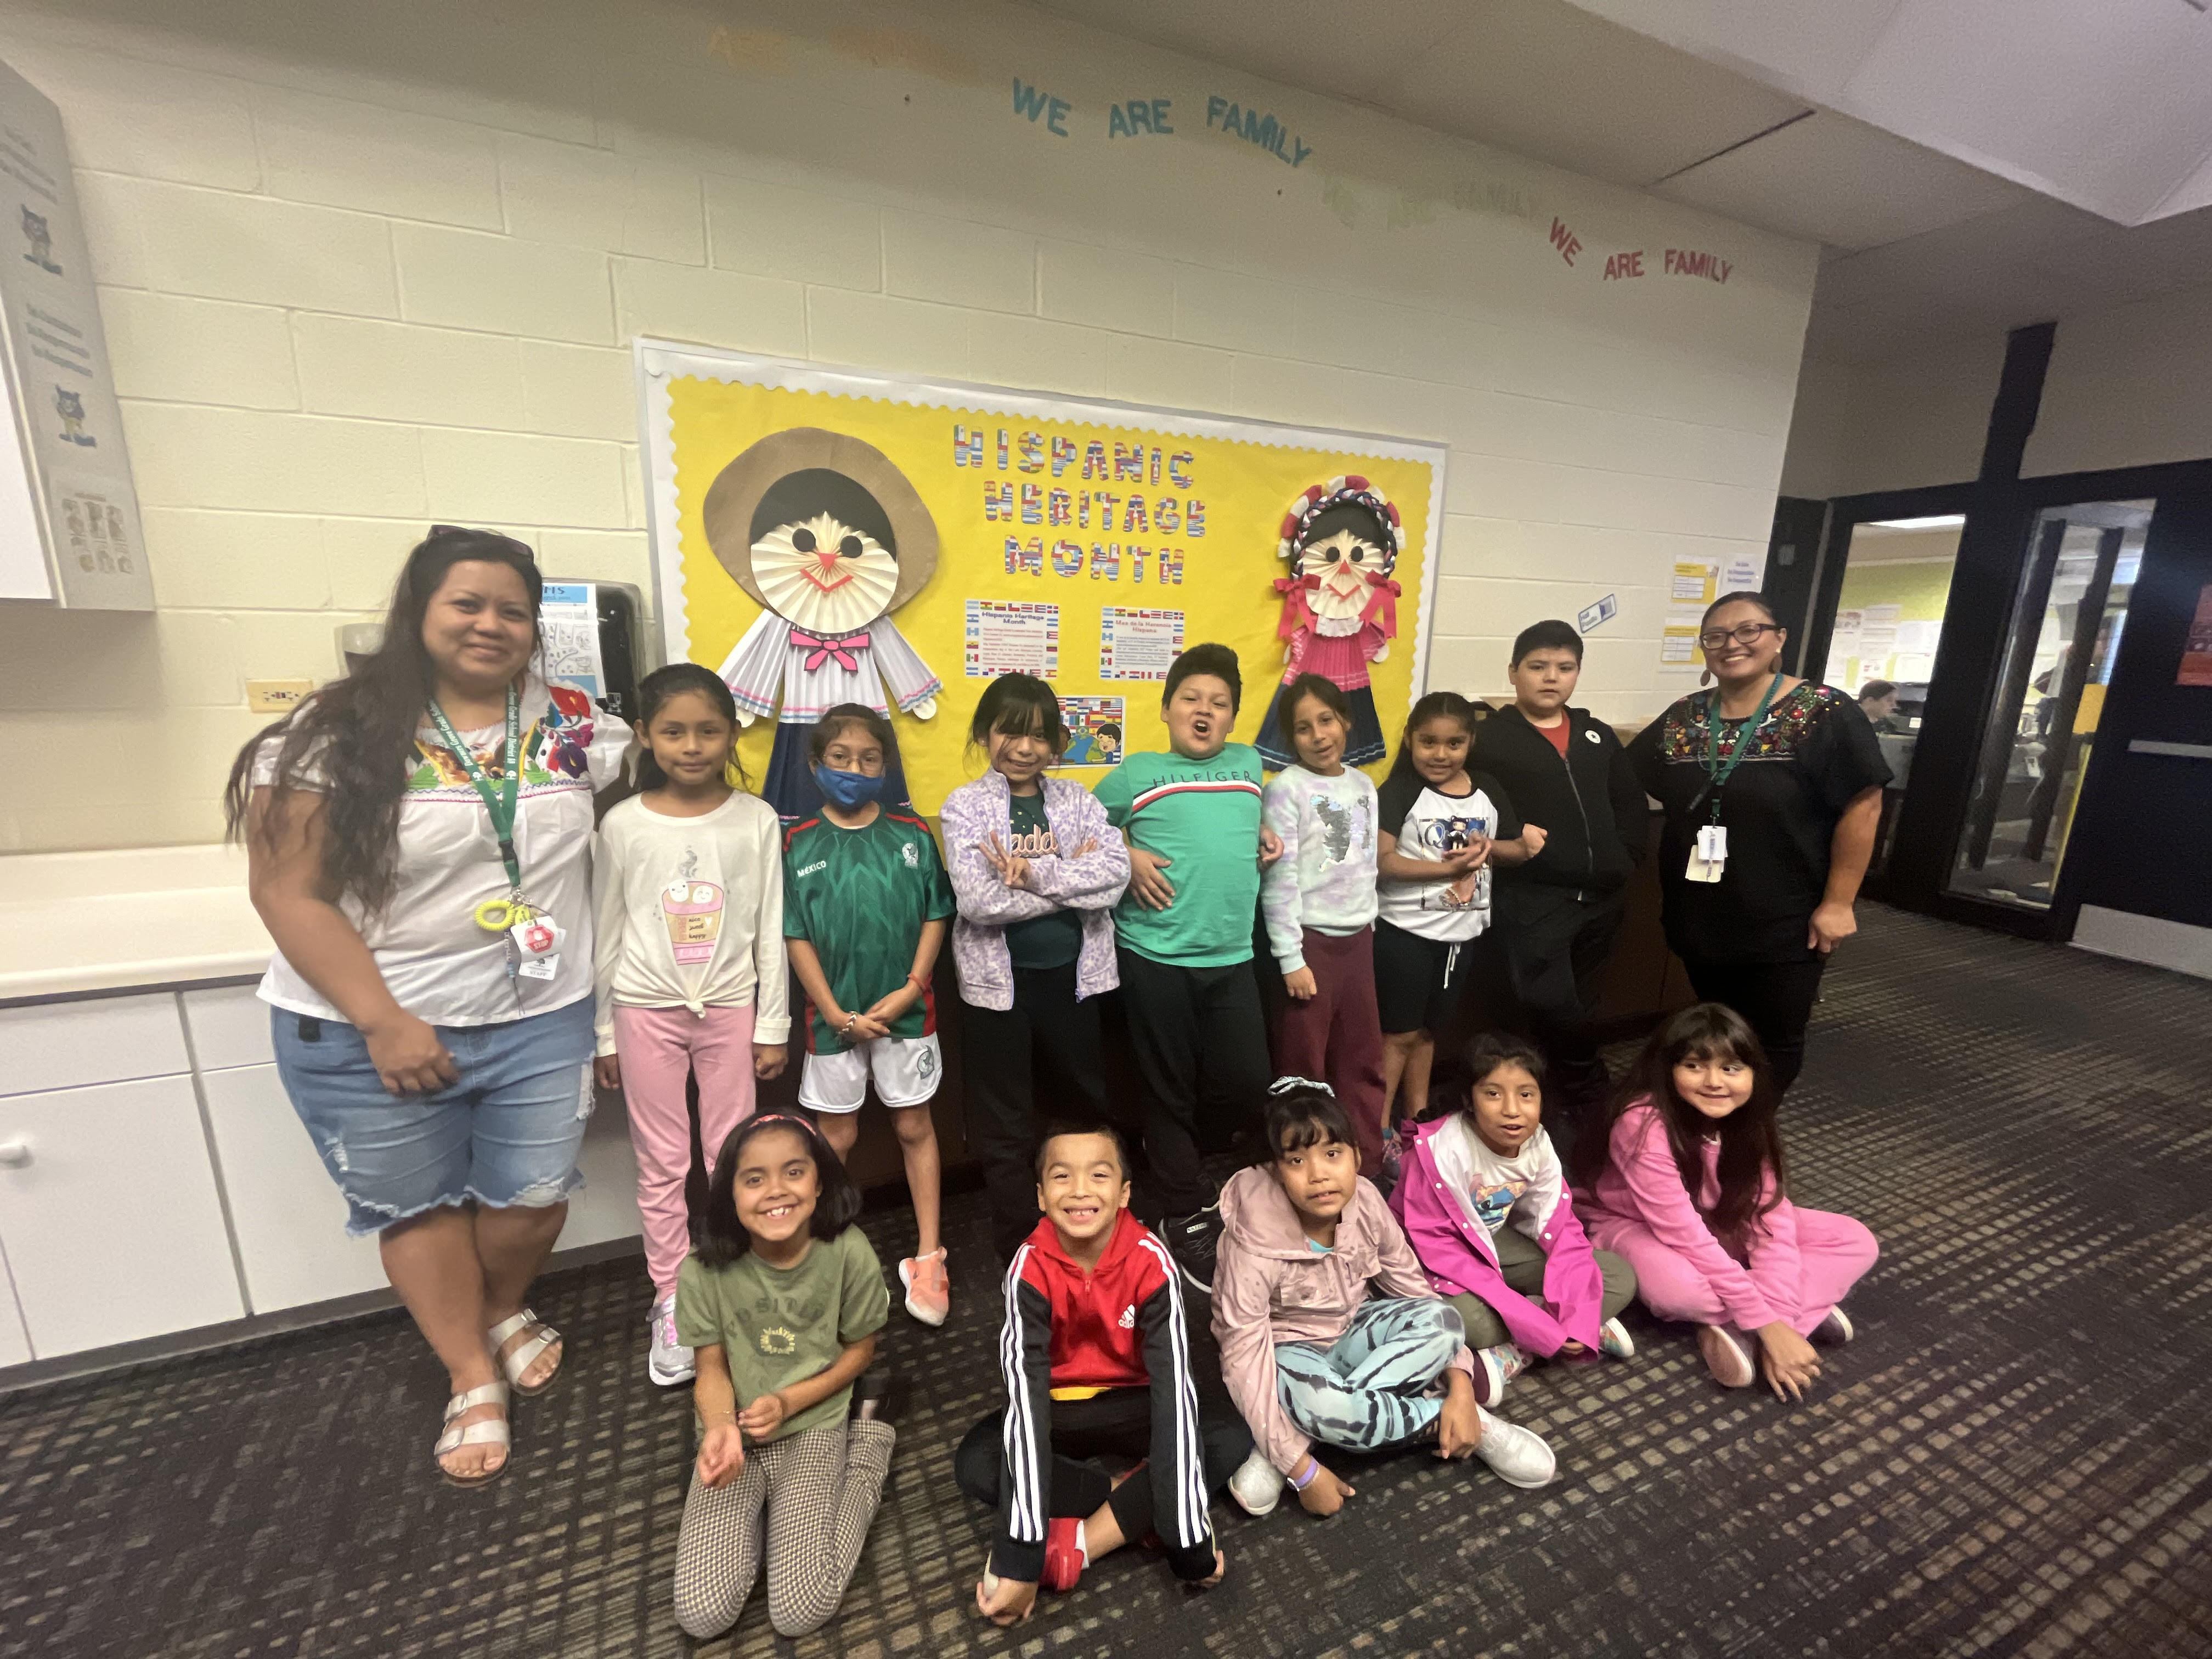 DeLeon's Class Celebrates Hispanic Heritage Month